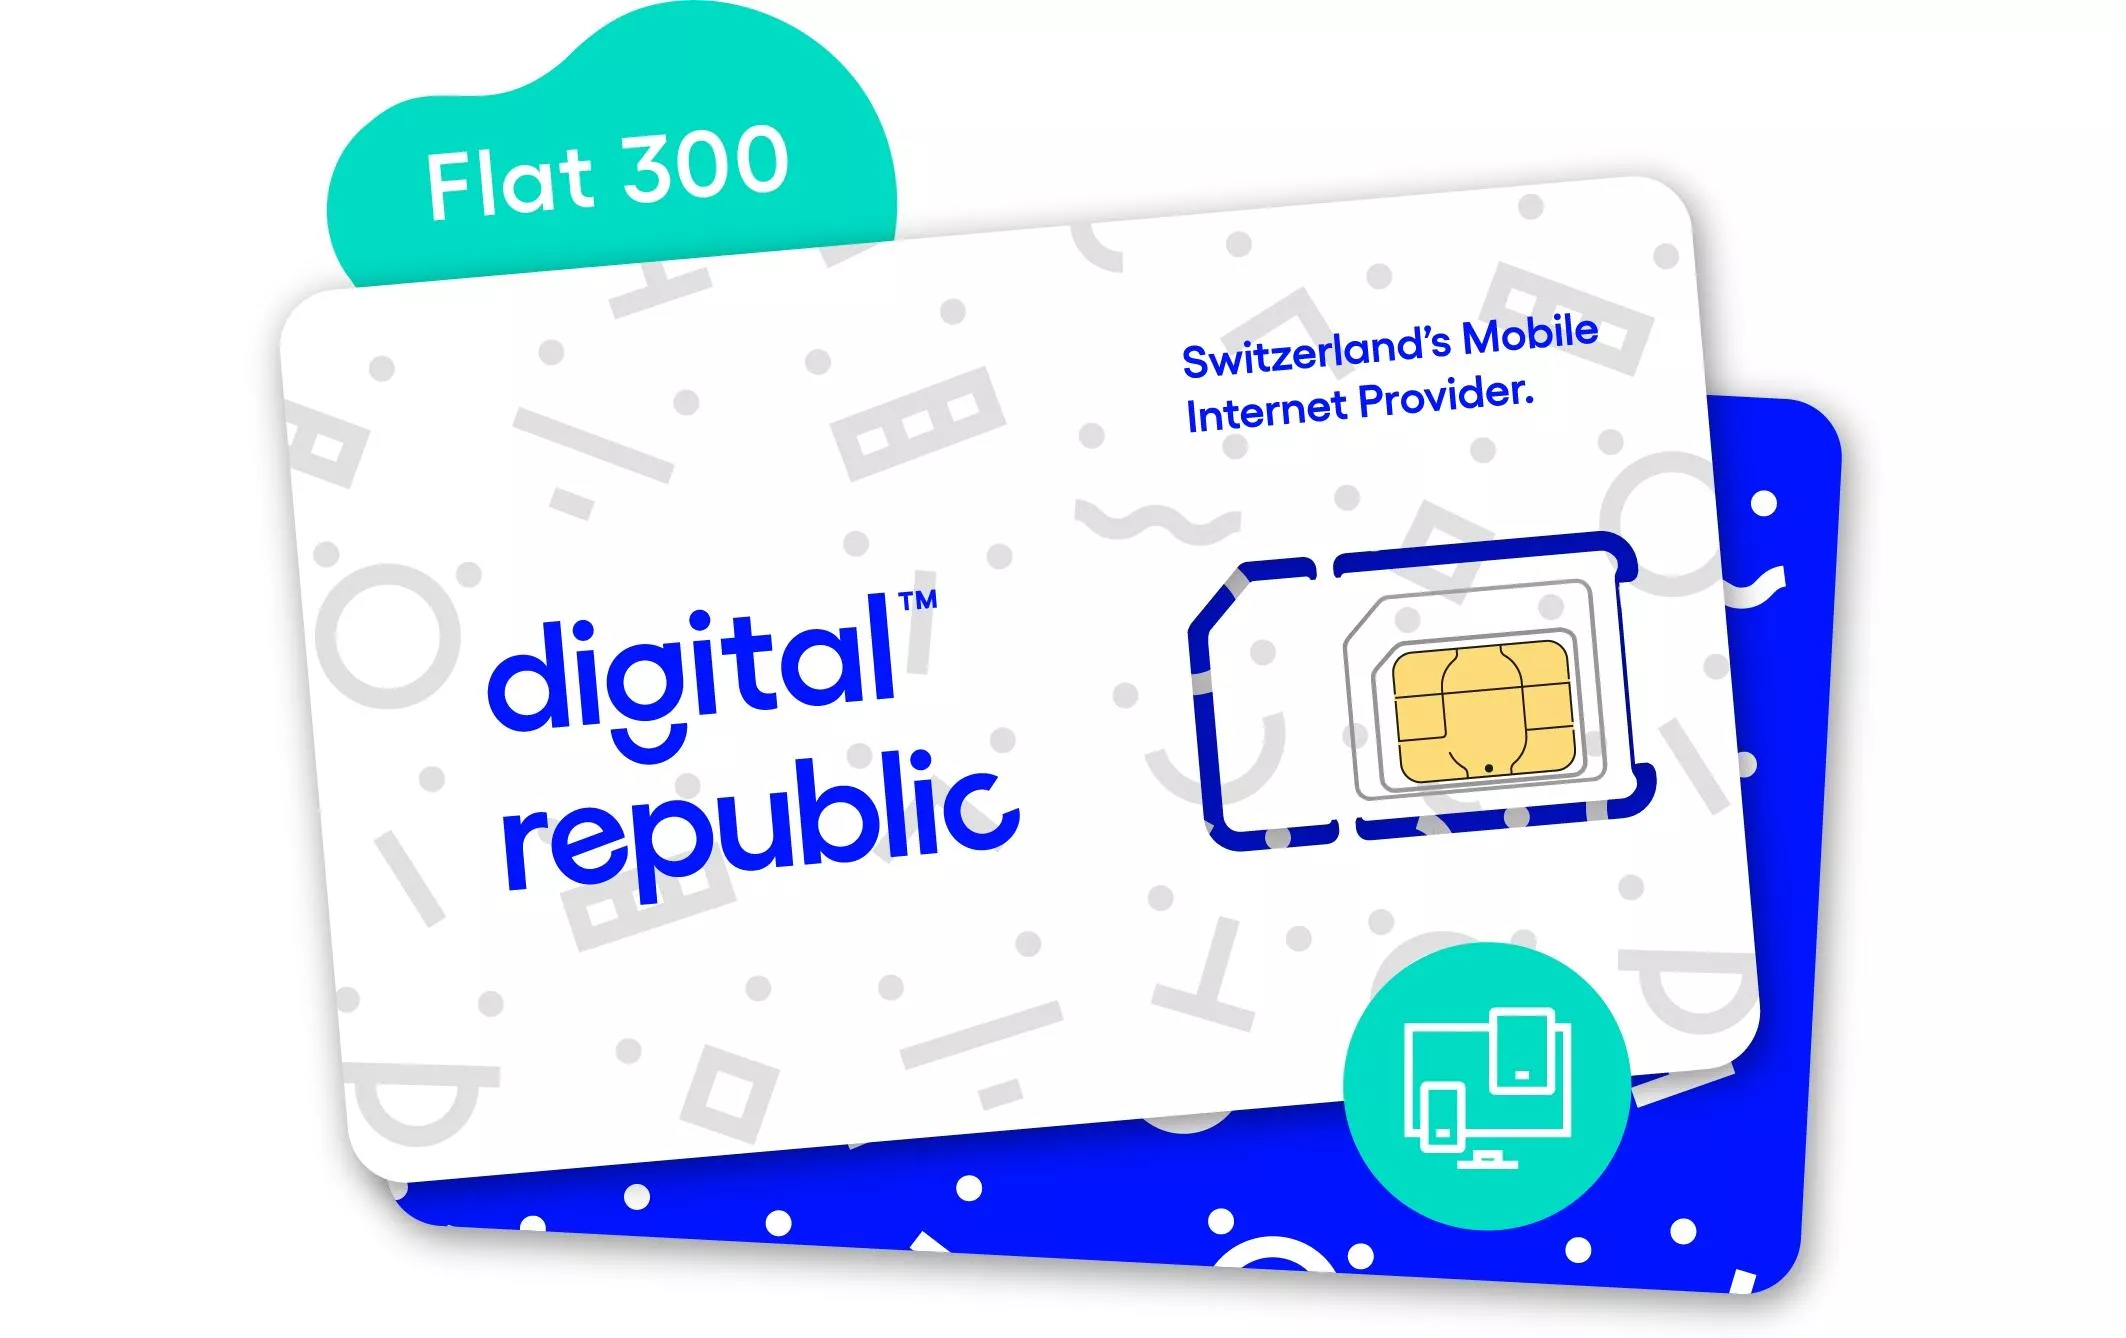 SIM Card Internet illimitato per 30 giorni - Alta velocità